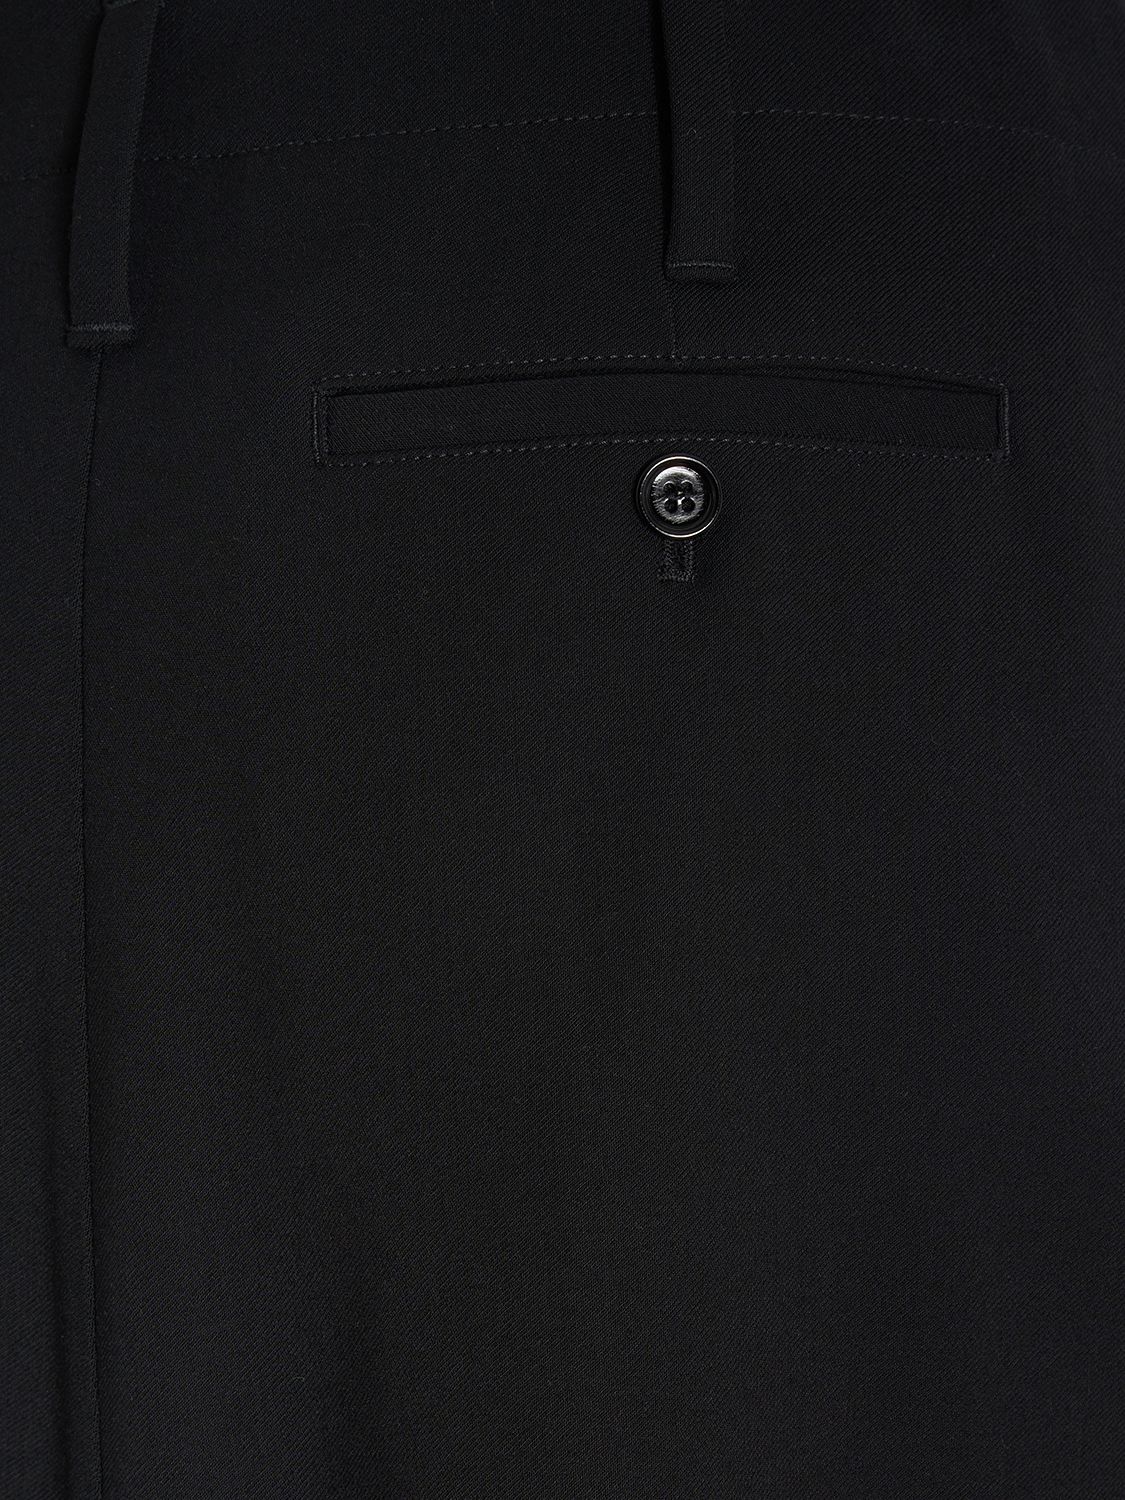 Shop Ami Alexandre Mattiussi Wool & Viscose Twill Midi Skirt In Black